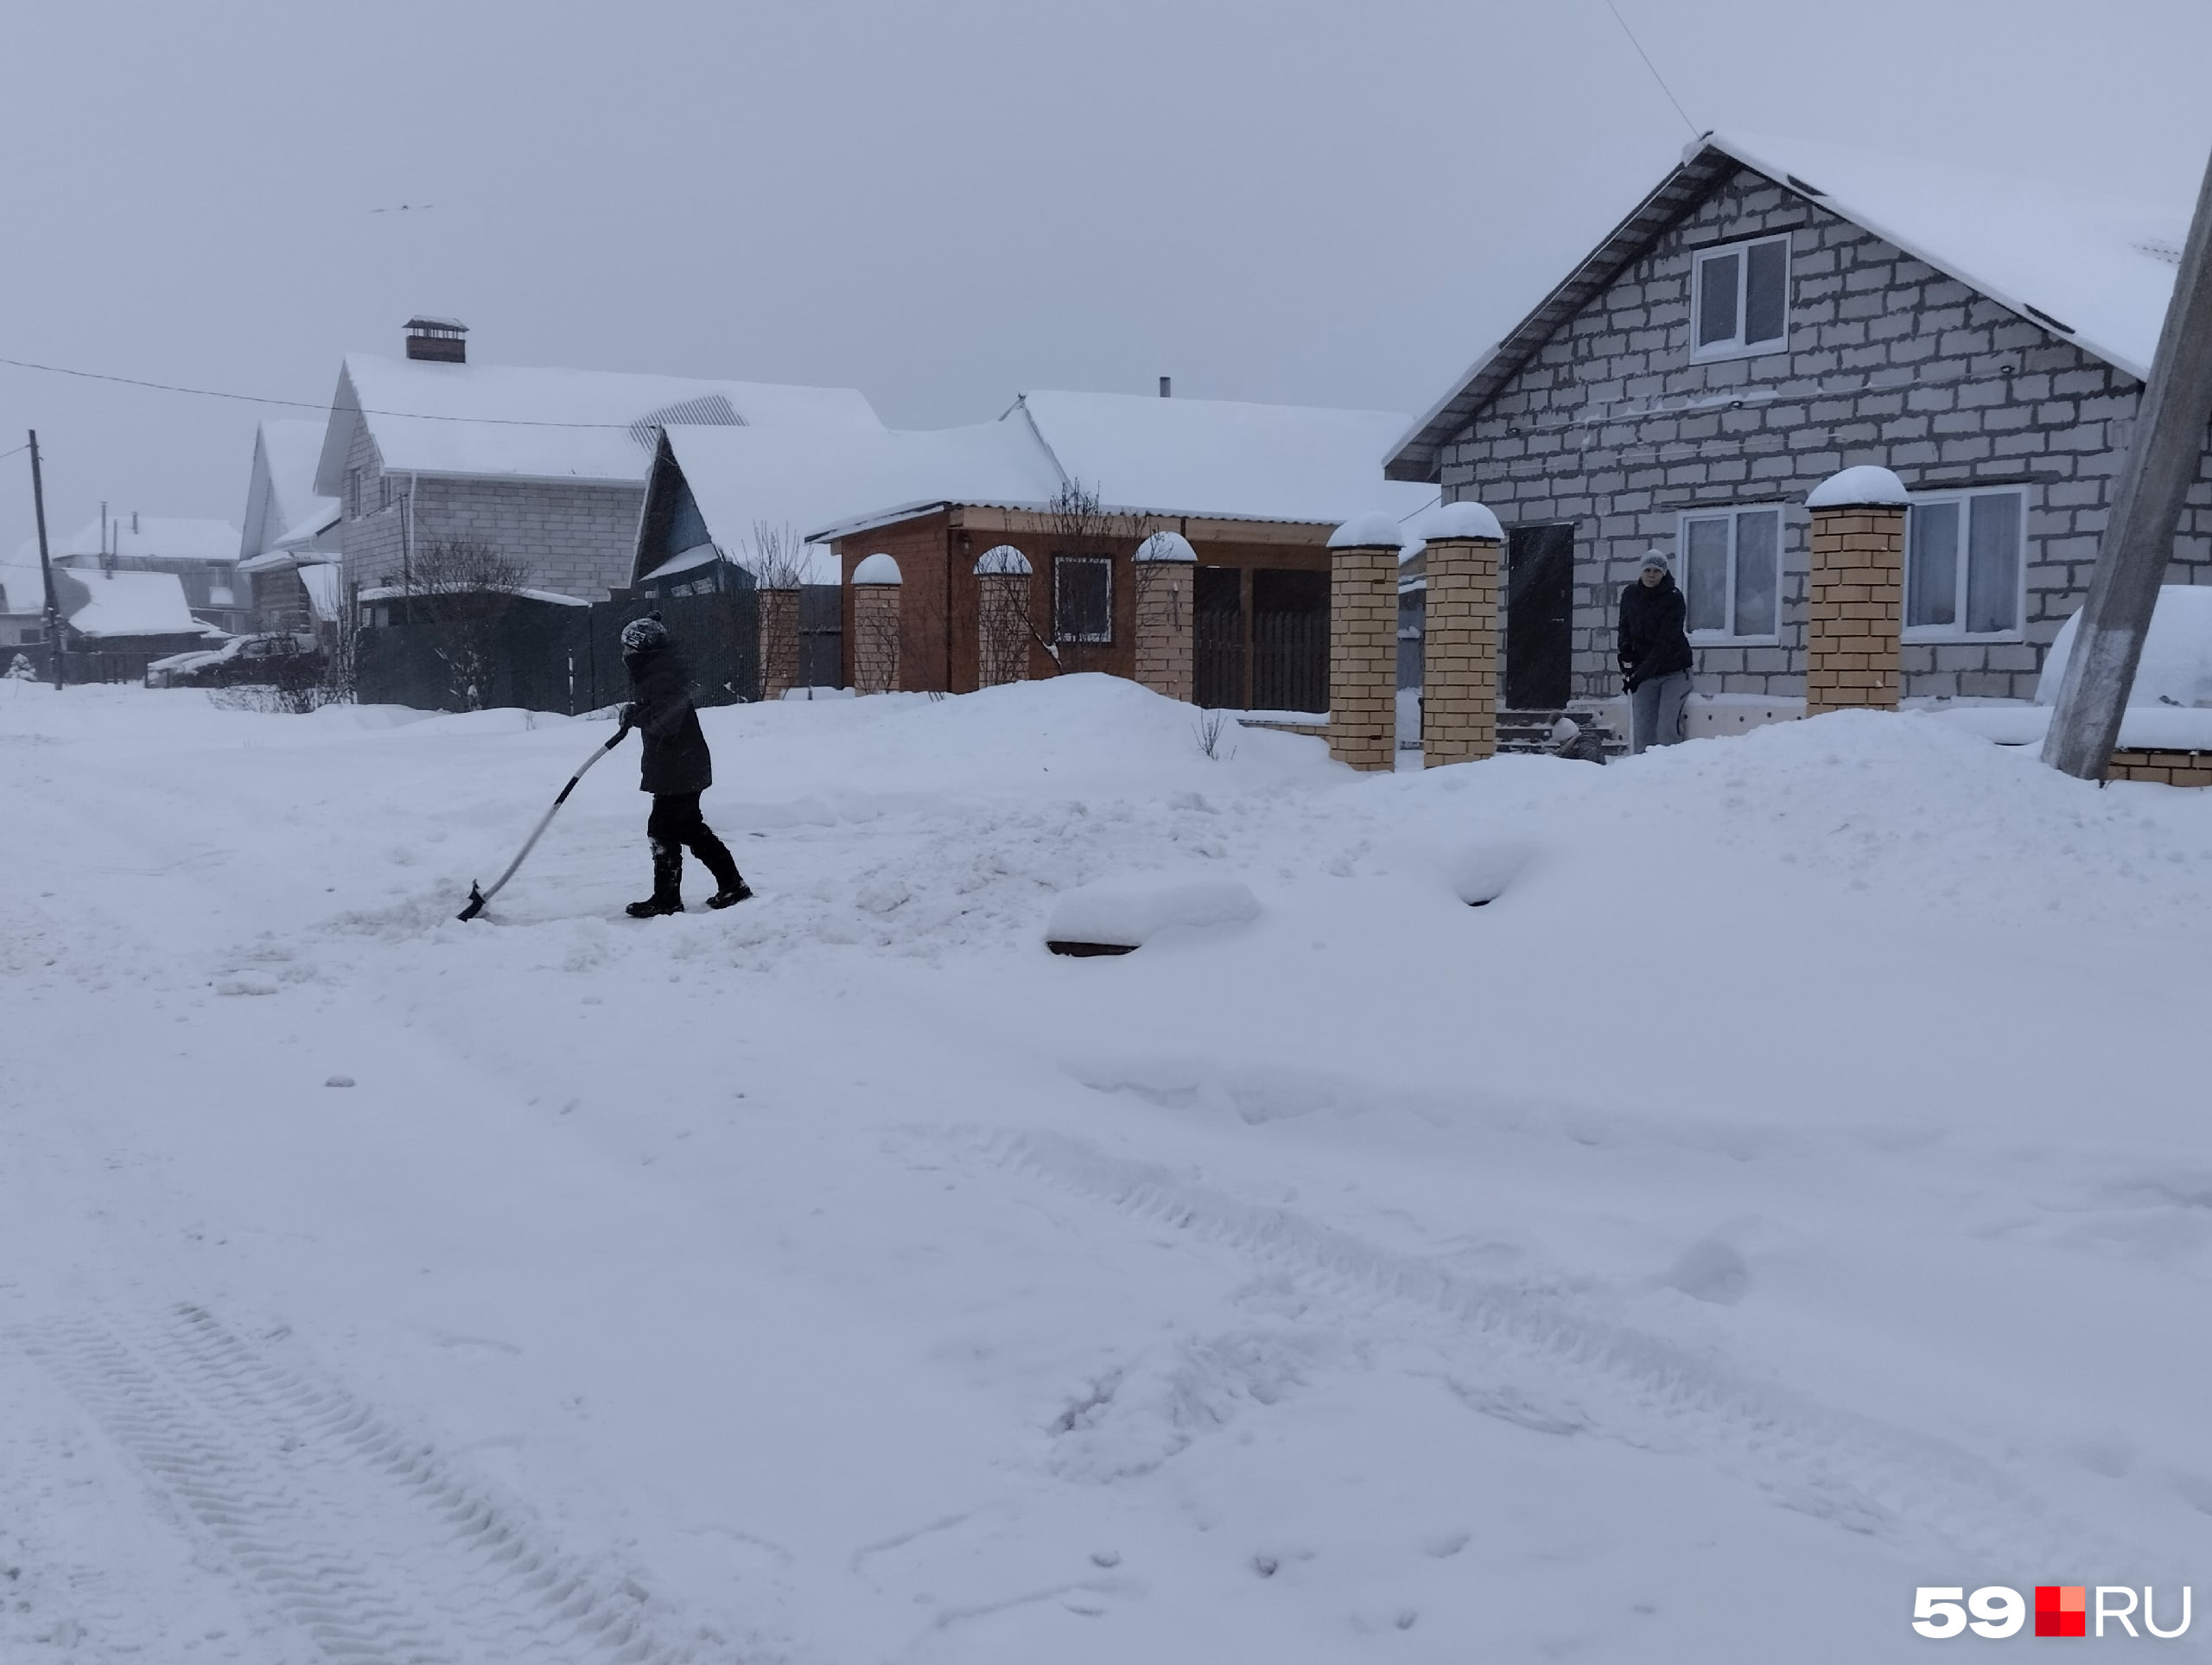 Если в городе работают муниципальные службы, то жители района чаще убирают снег самостоятельно